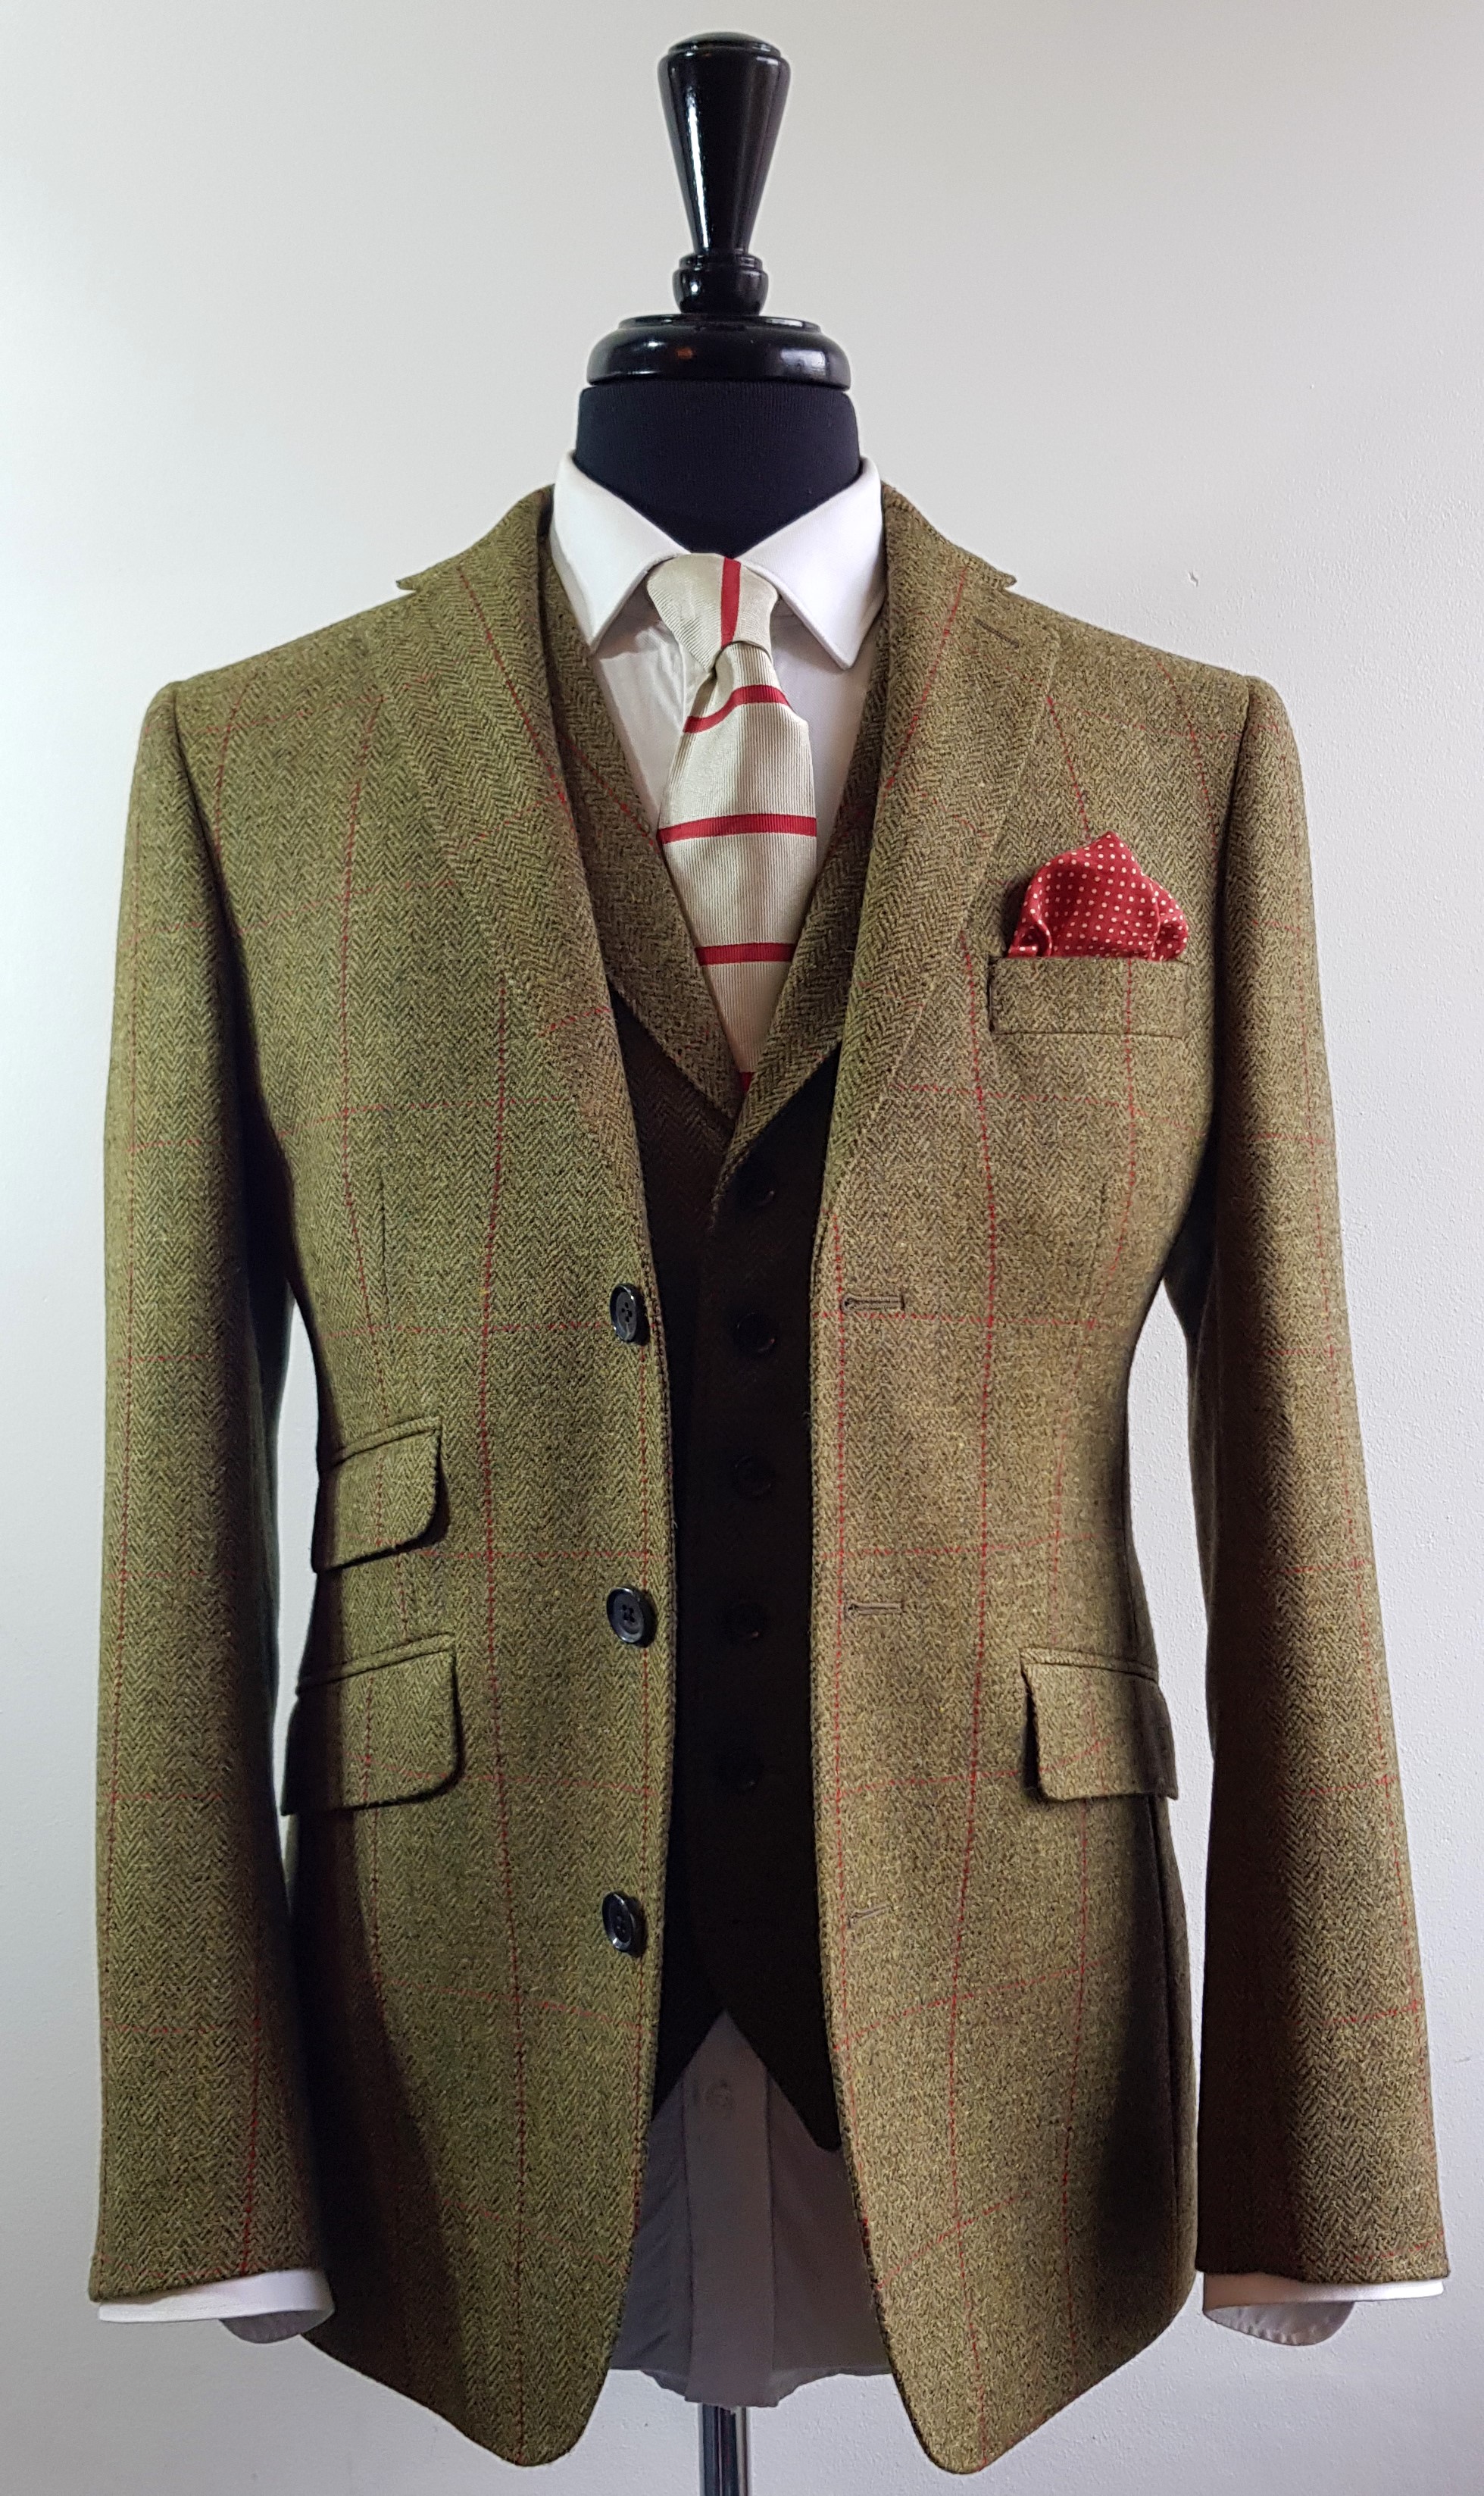 Tweed Jacket and Tweed Waistcoat (5).jpg